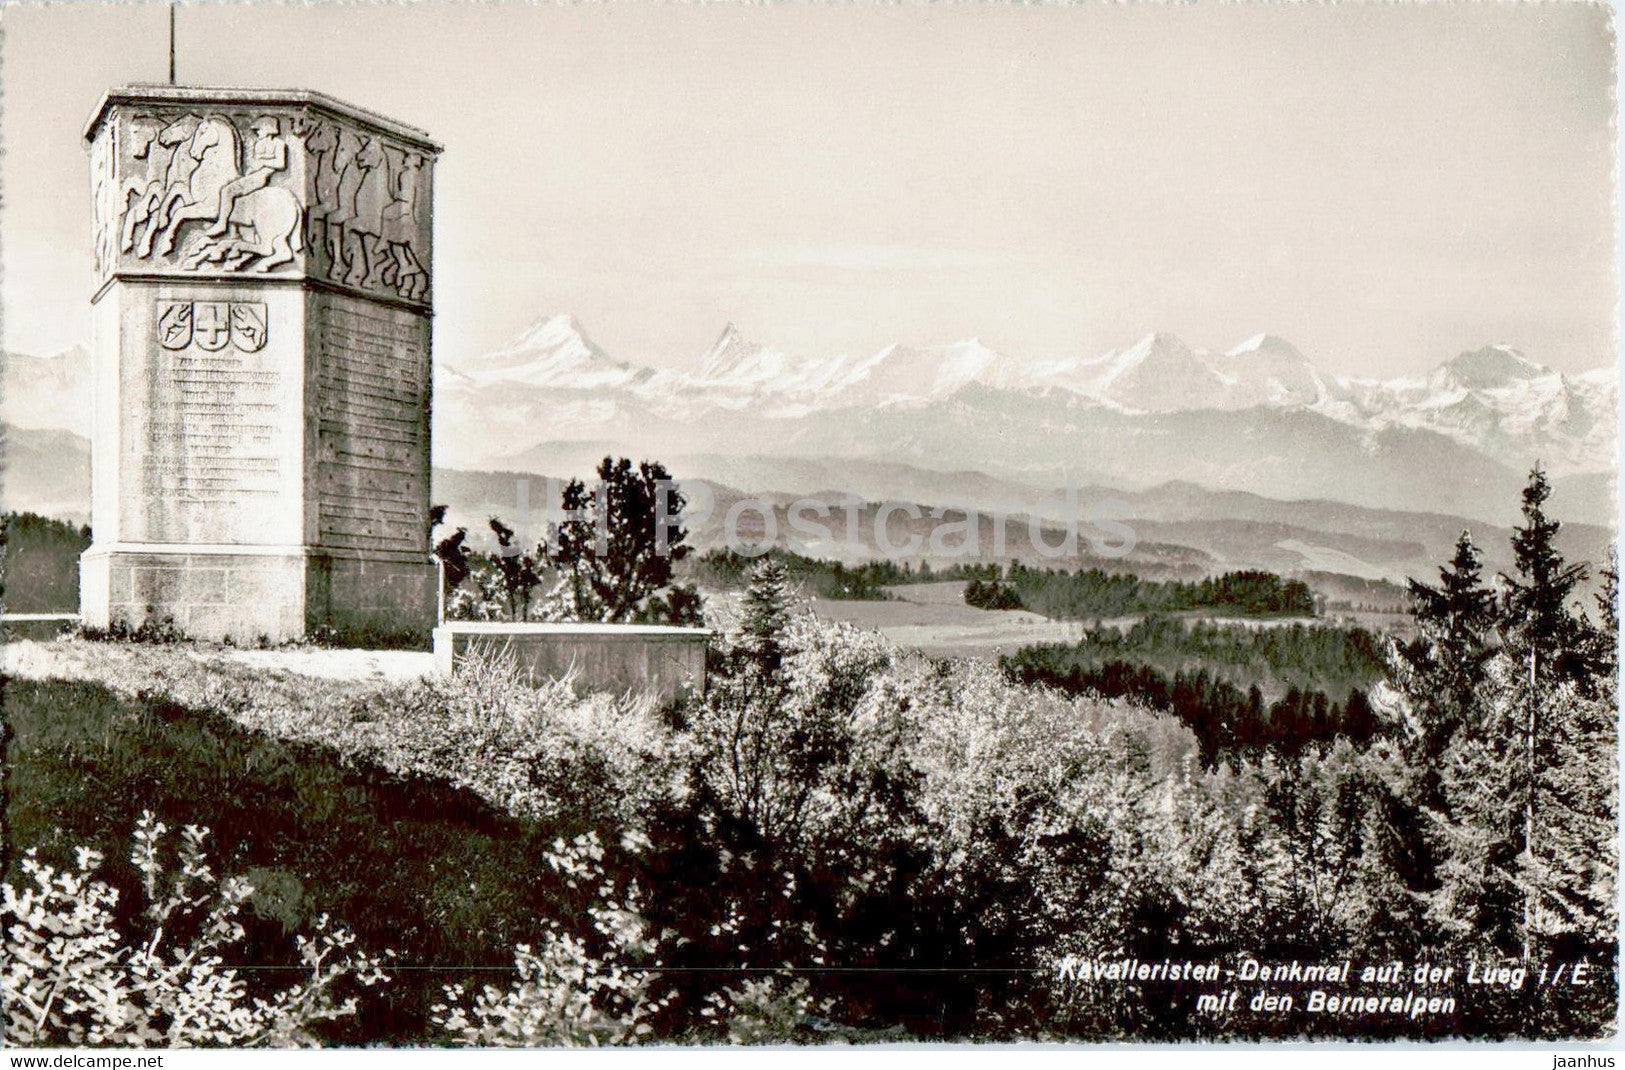 Kavaleristen Denkmal auf der Lueg mit den Berneralpen - monument - 8192 - 1948 - old postcard - Switzerland - used - JH Postcards